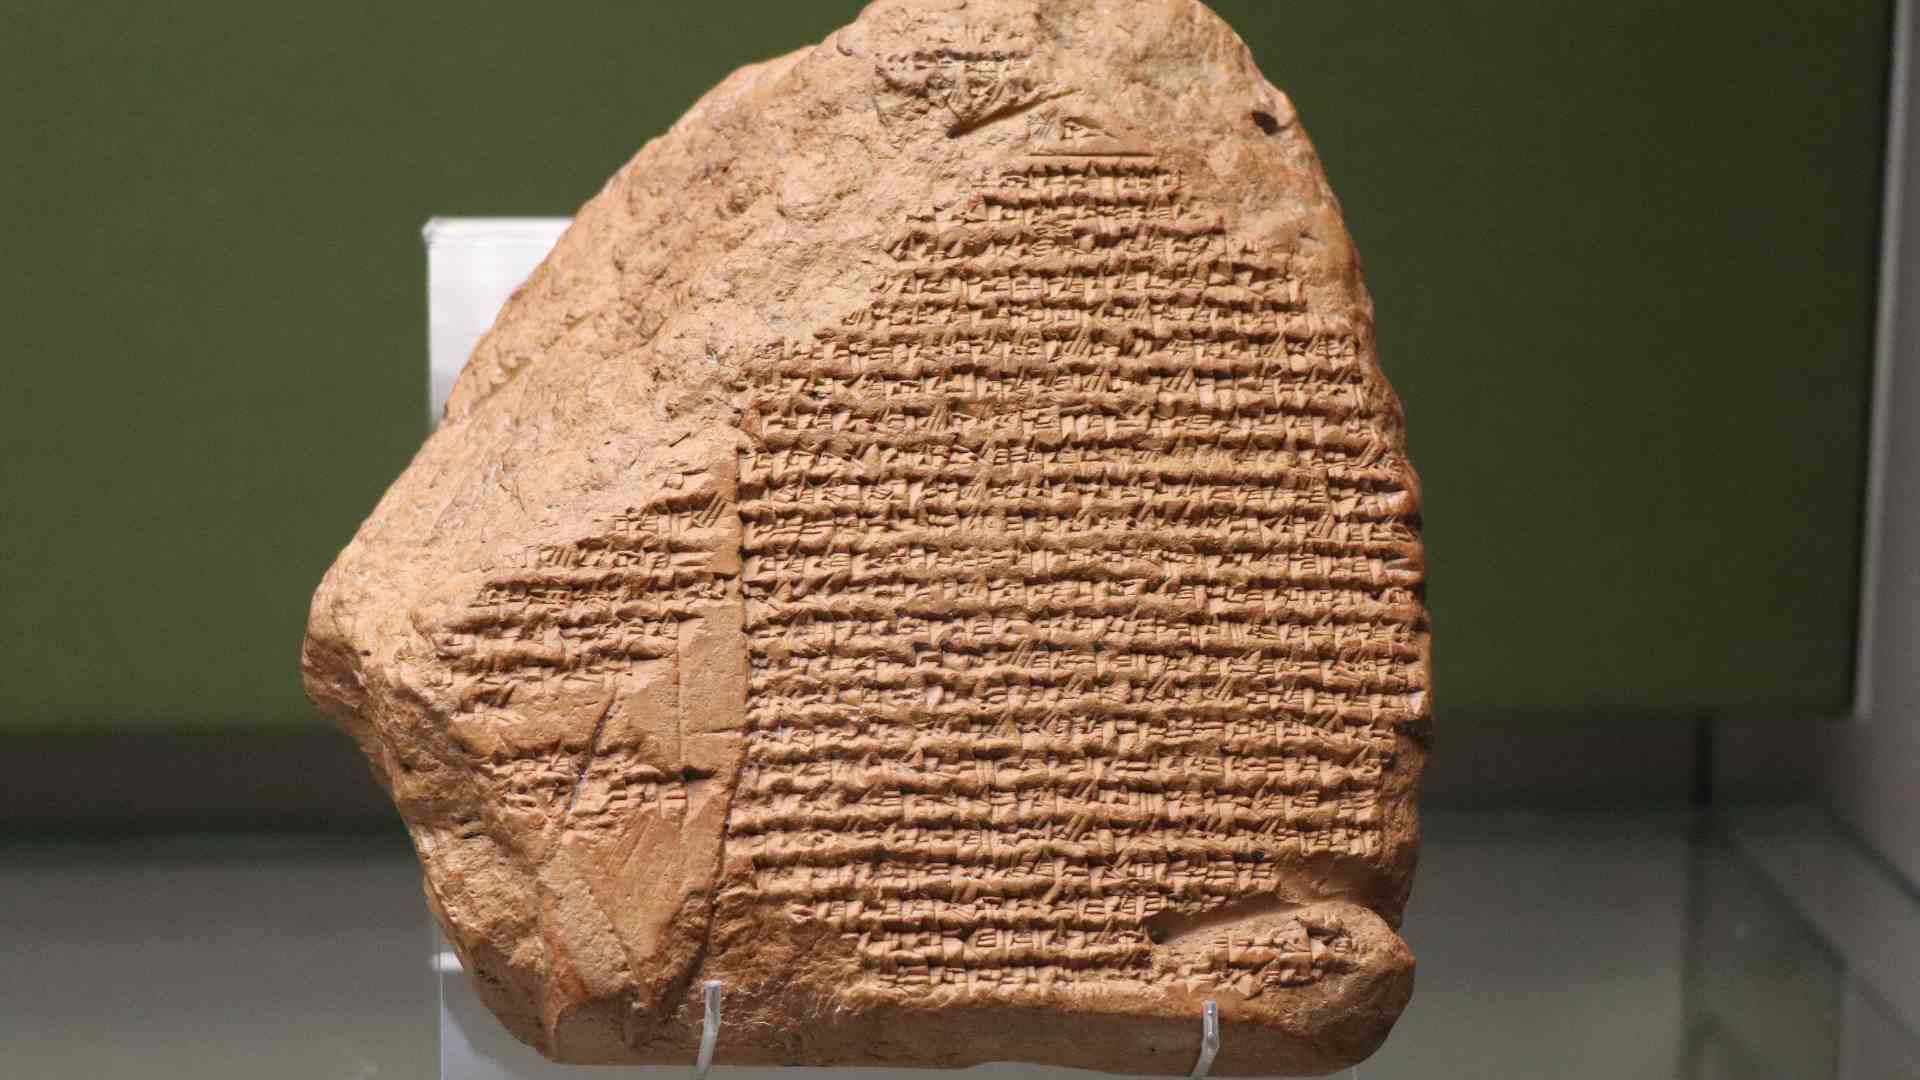 Fragment de la chronique de Nabonide - British Museum  - Photo P. Vauclair